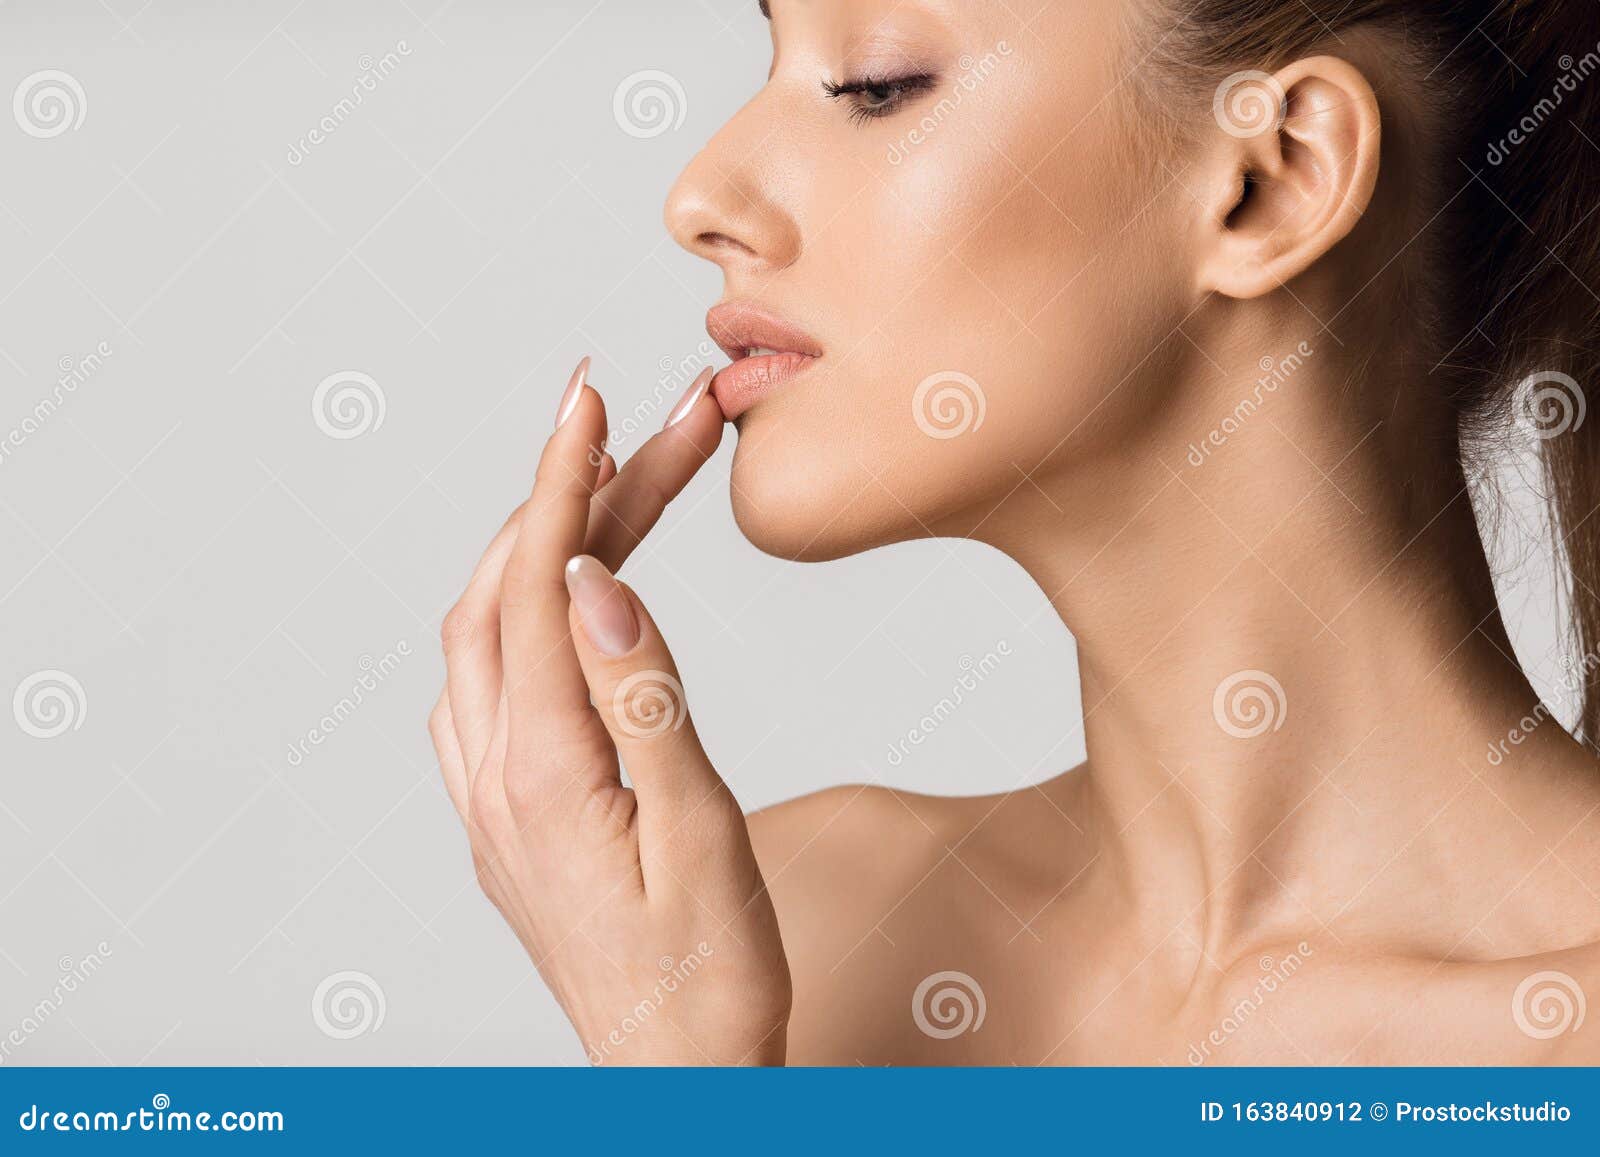 lip augmentation. beautiful girl touching her lips